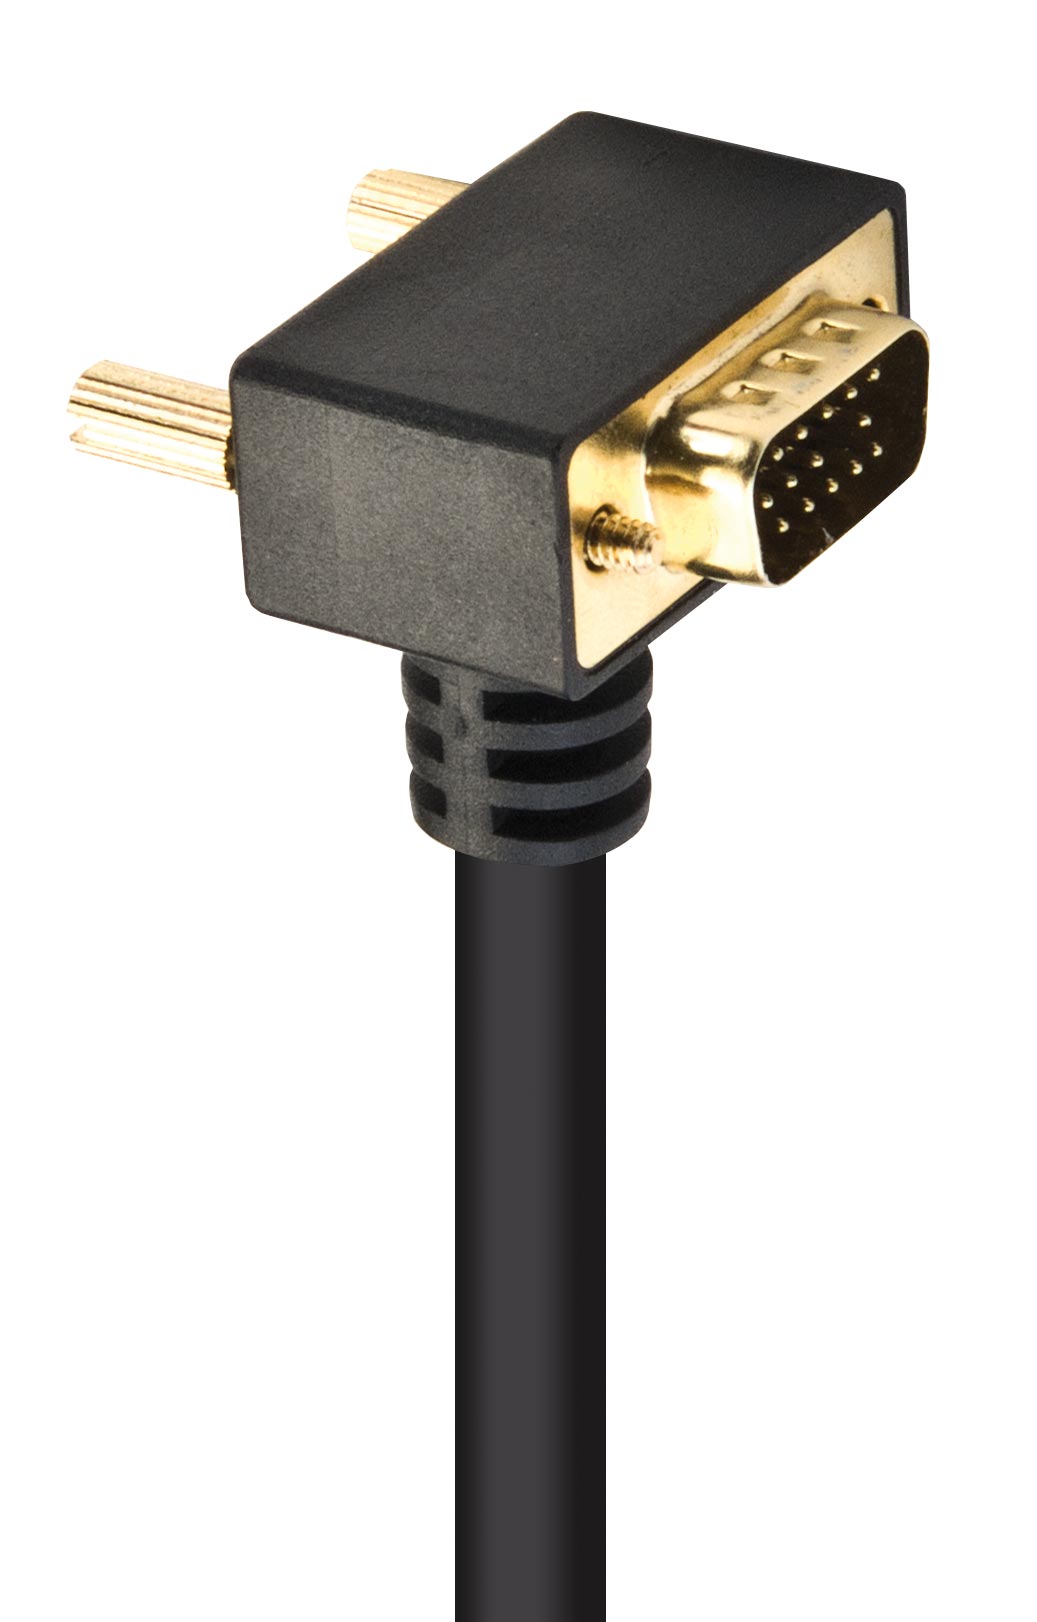 VGA cable with angled plug, 2 m